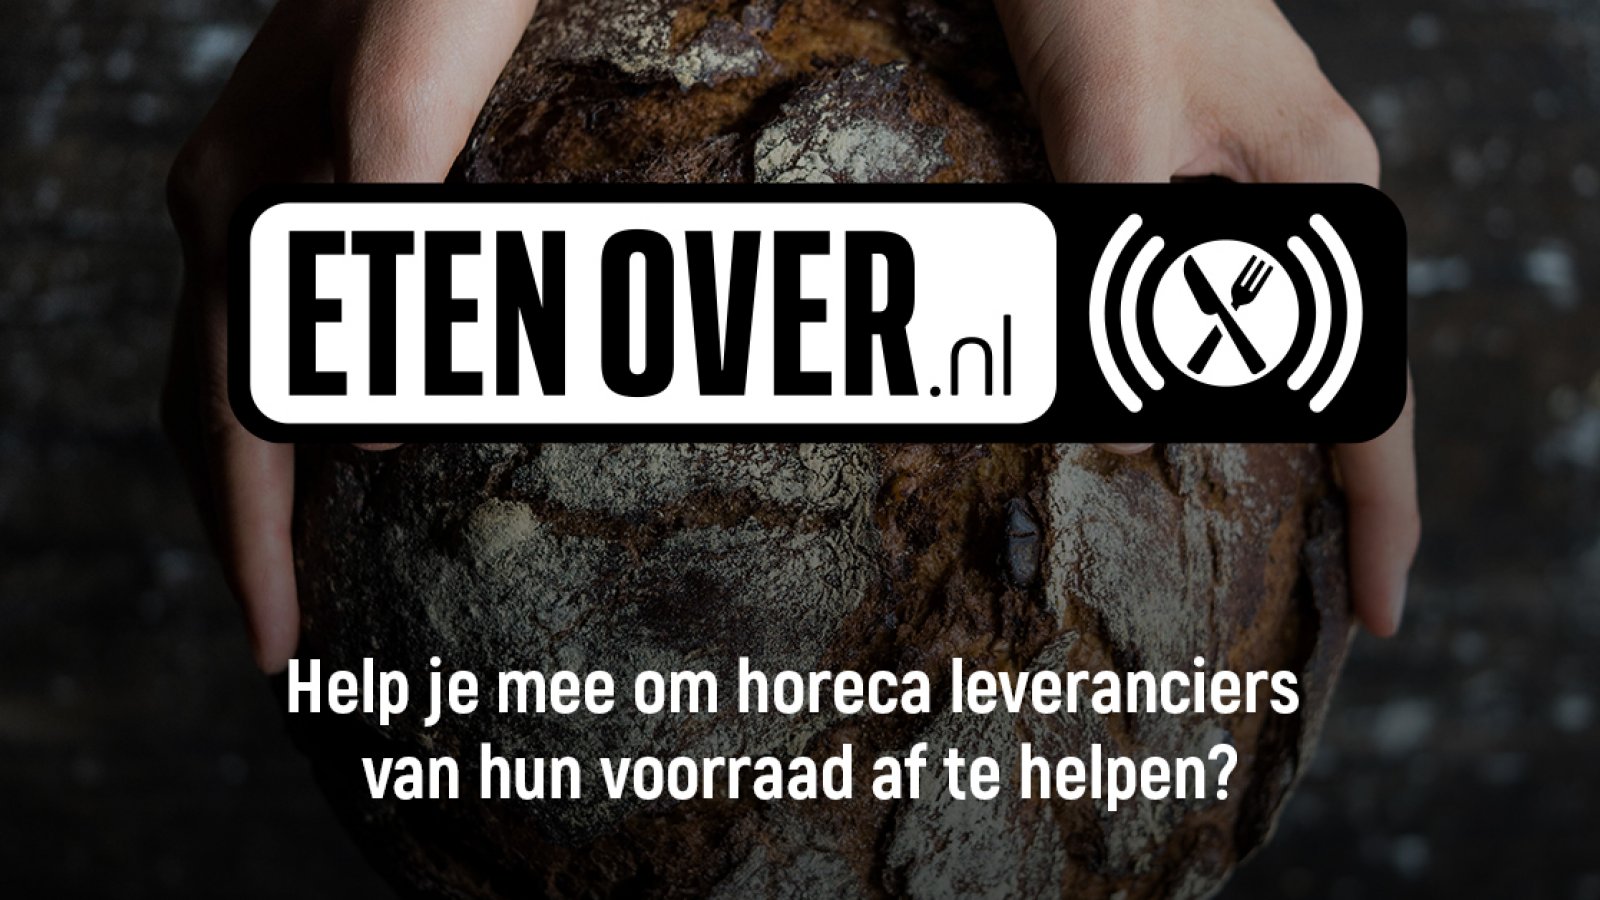 Horecaleveranciers starten met etenover.nl 